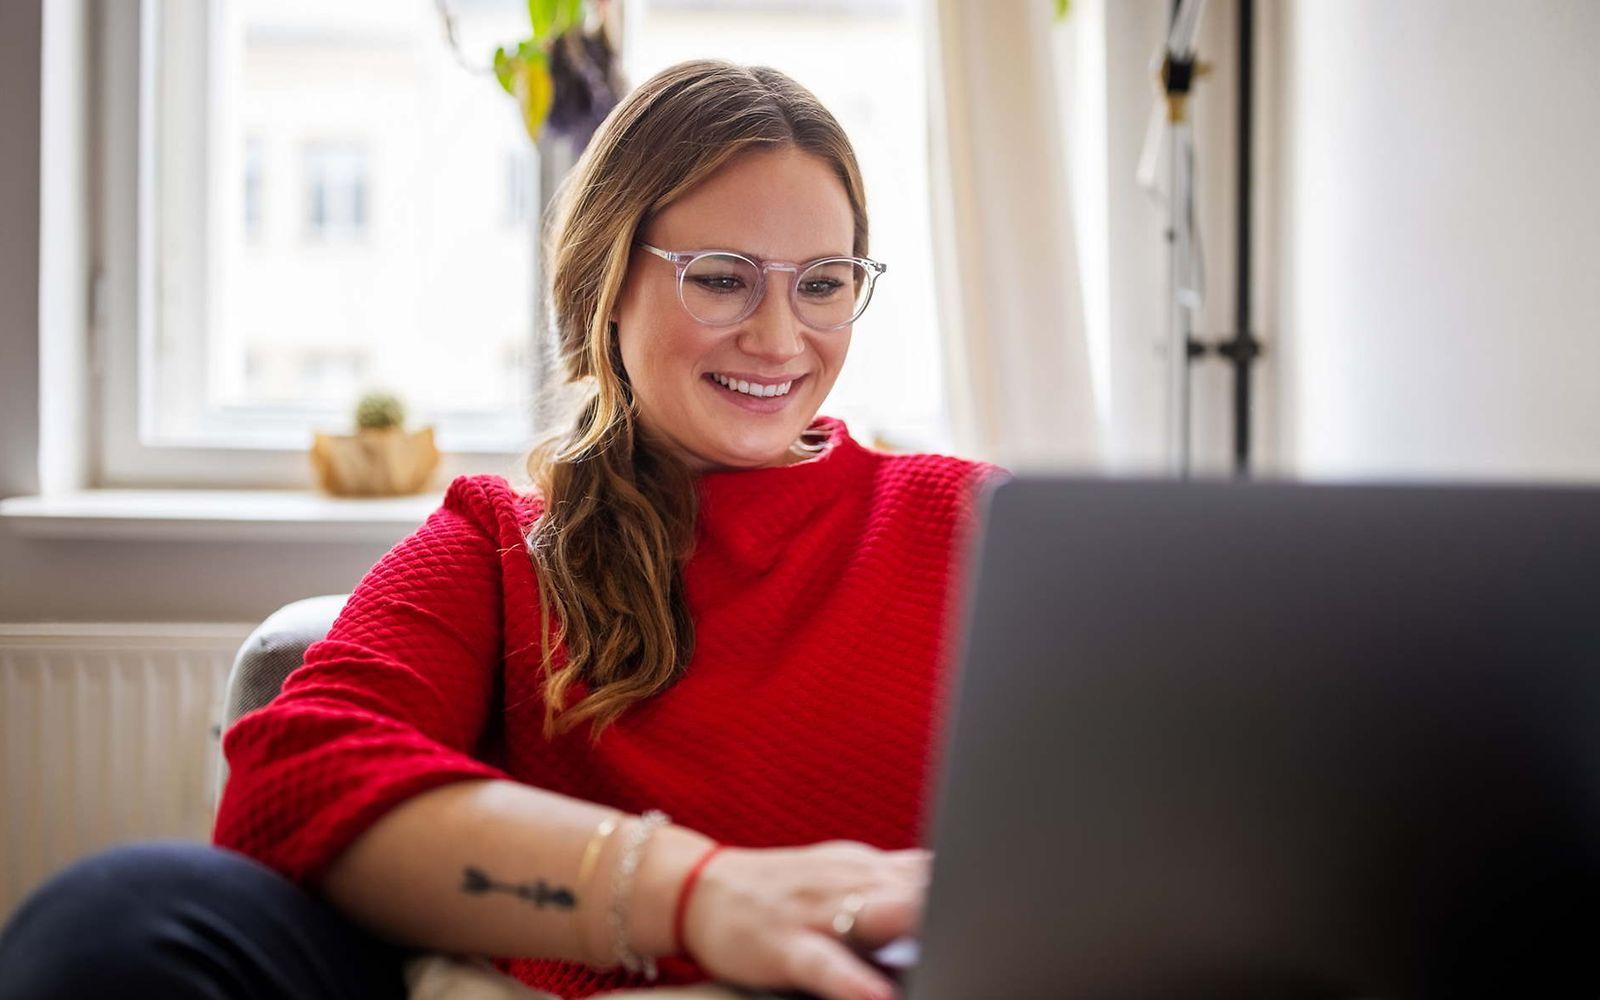 Bild: Junge Frau mit rotem Pullover schaut in Ihren Laptop.